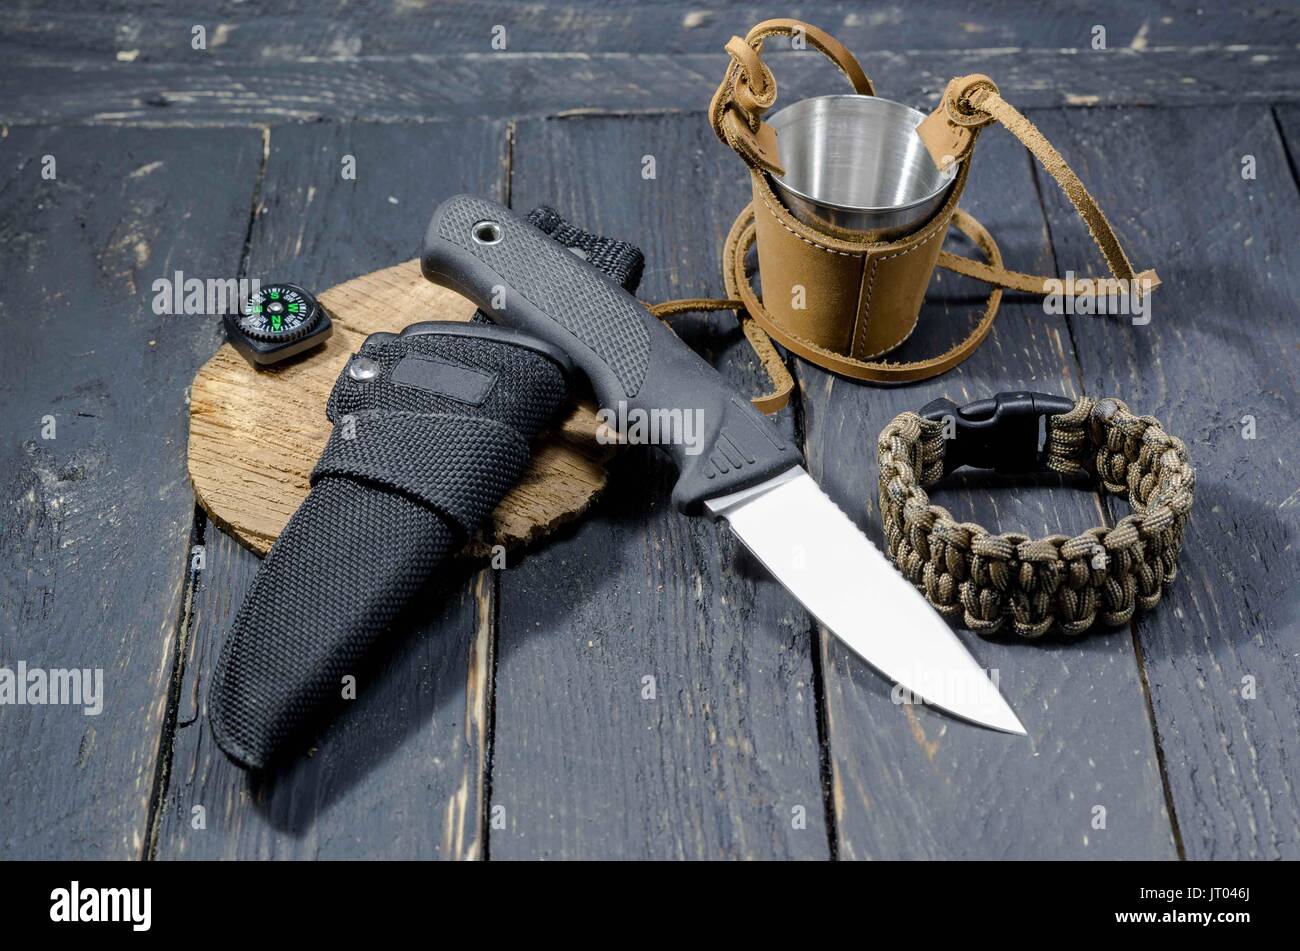 Un cuchillo militar de supervivencia, un brazalete de metal y